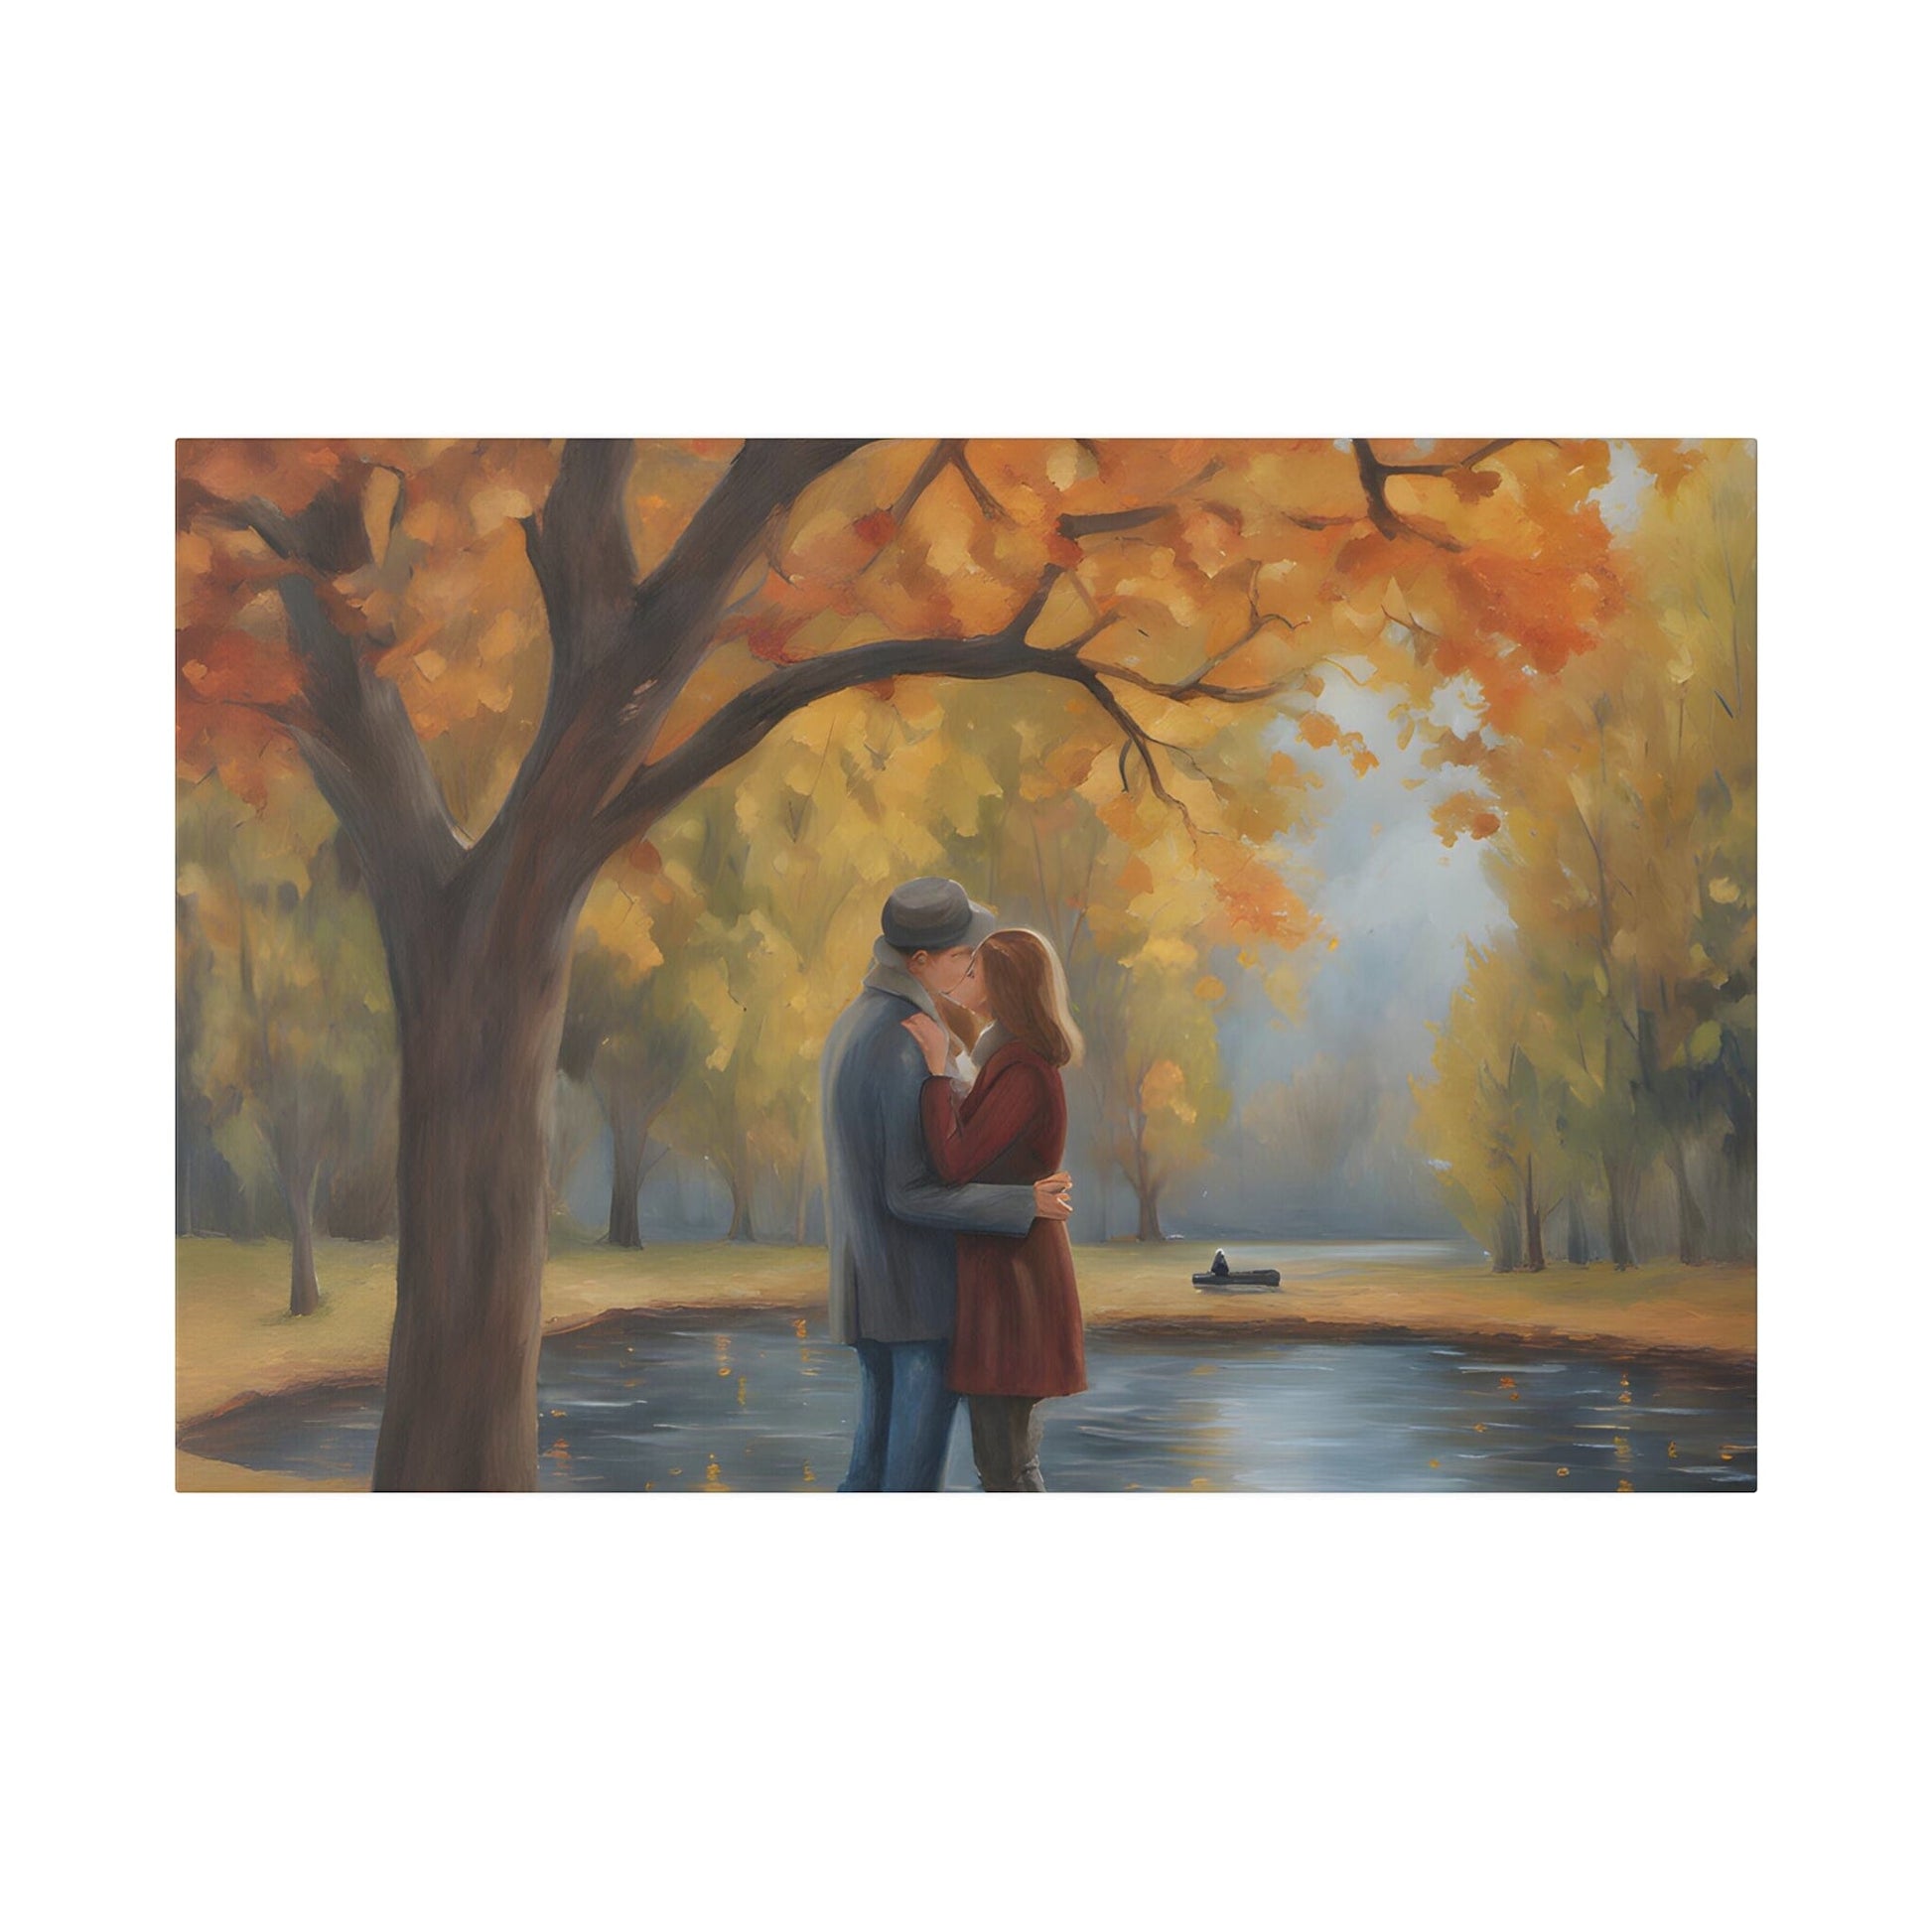 Grayson Hart. Autumn Embrace. Graphic Canvas.